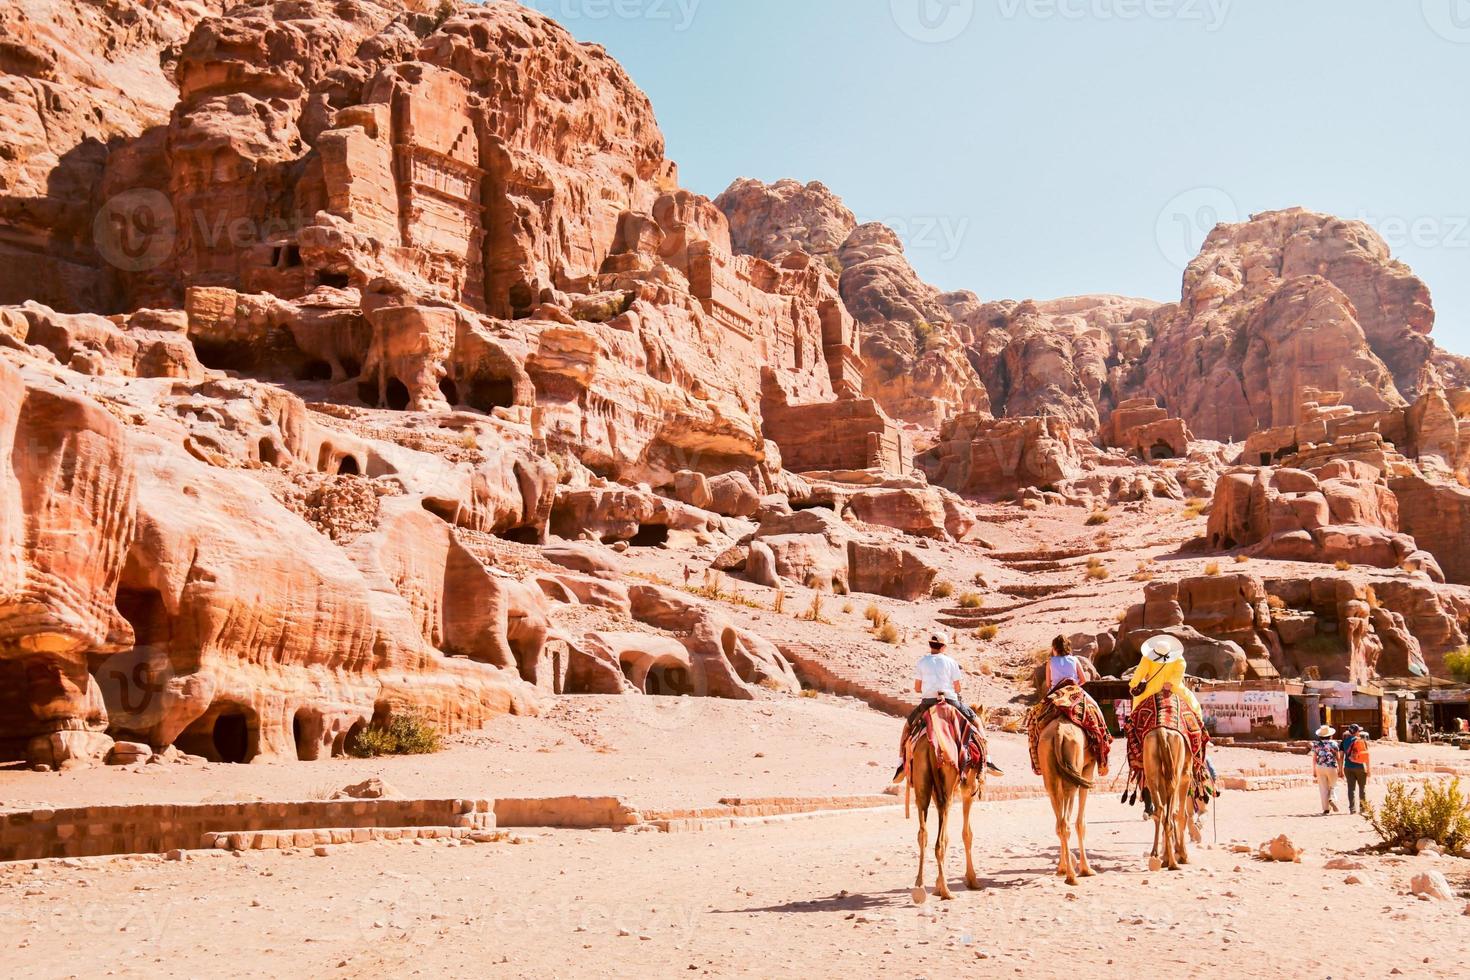 lokal- arab turist guide i petra stad ridning på kamel med turister följande grupp förbi kunglig petra gravar i solig varm dag foto